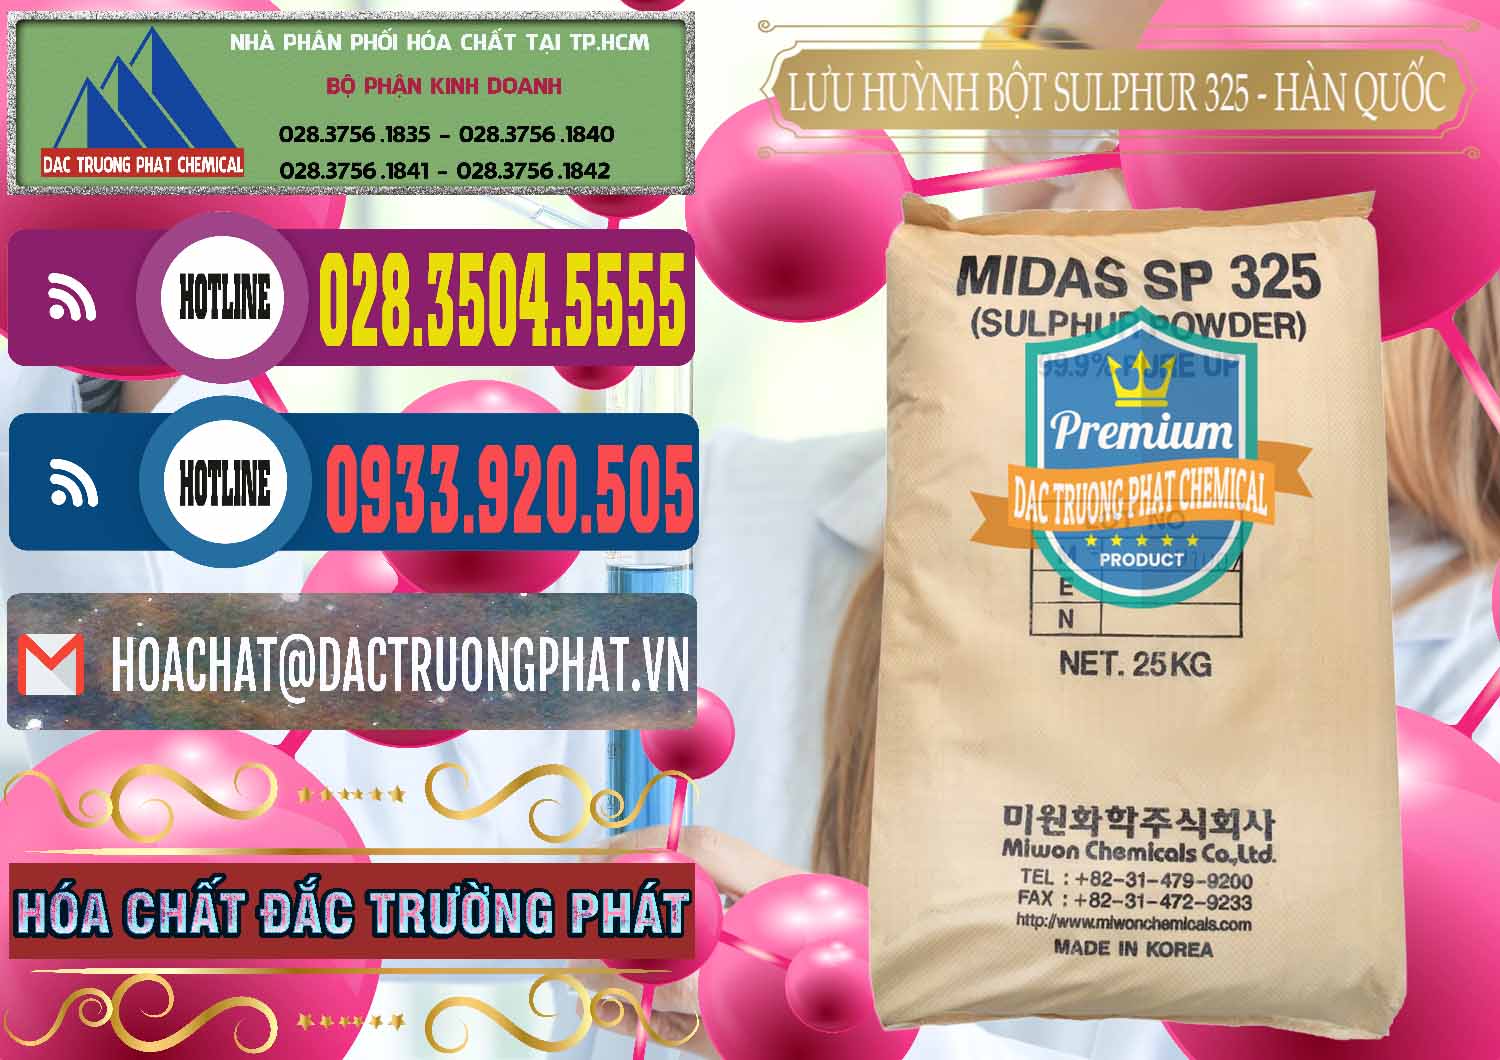 Cty bán ( cung ứng ) Lưu huỳnh Bột - Sulfur Powder Midas SP 325 Hàn Quốc Korea - 0198 - Bán và cung cấp hóa chất tại TP.HCM - muabanhoachat.com.vn